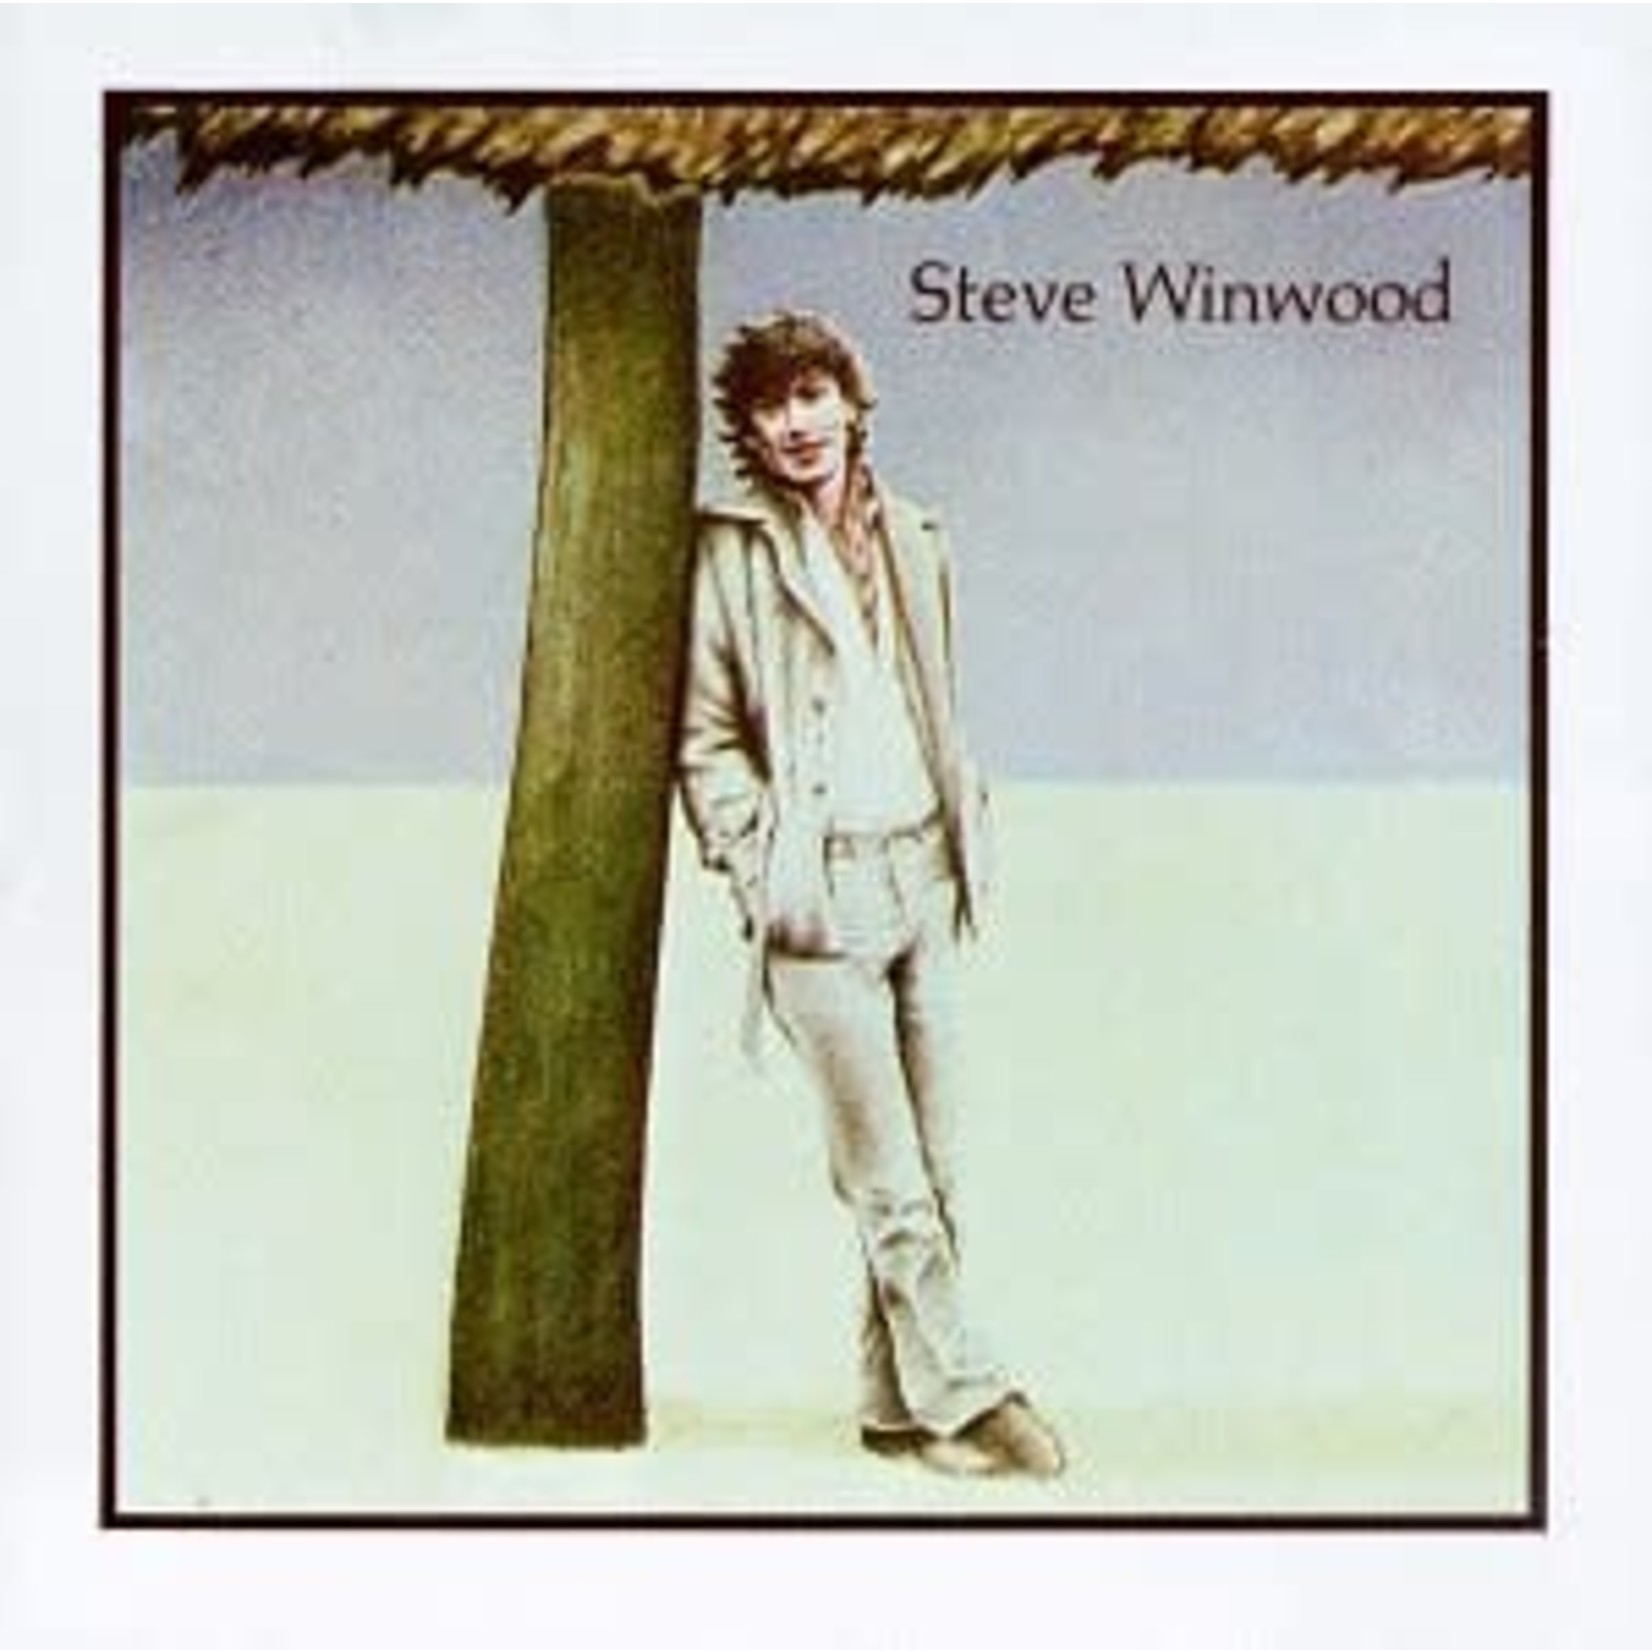 [Vintage] Steve Winwood - self-titled (1977)